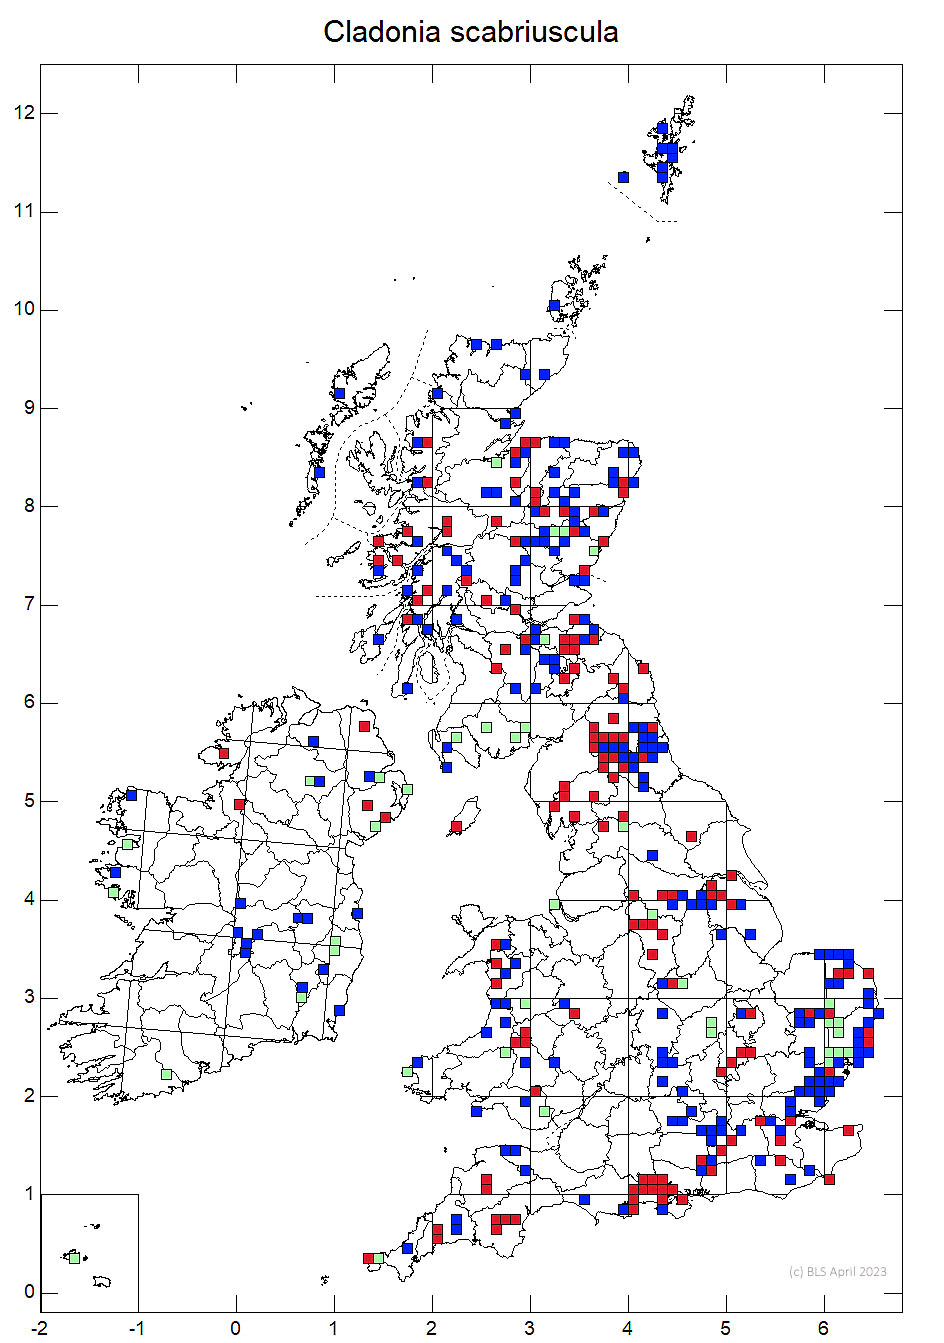 Cladonia scabriuscula 10km sq distribution map